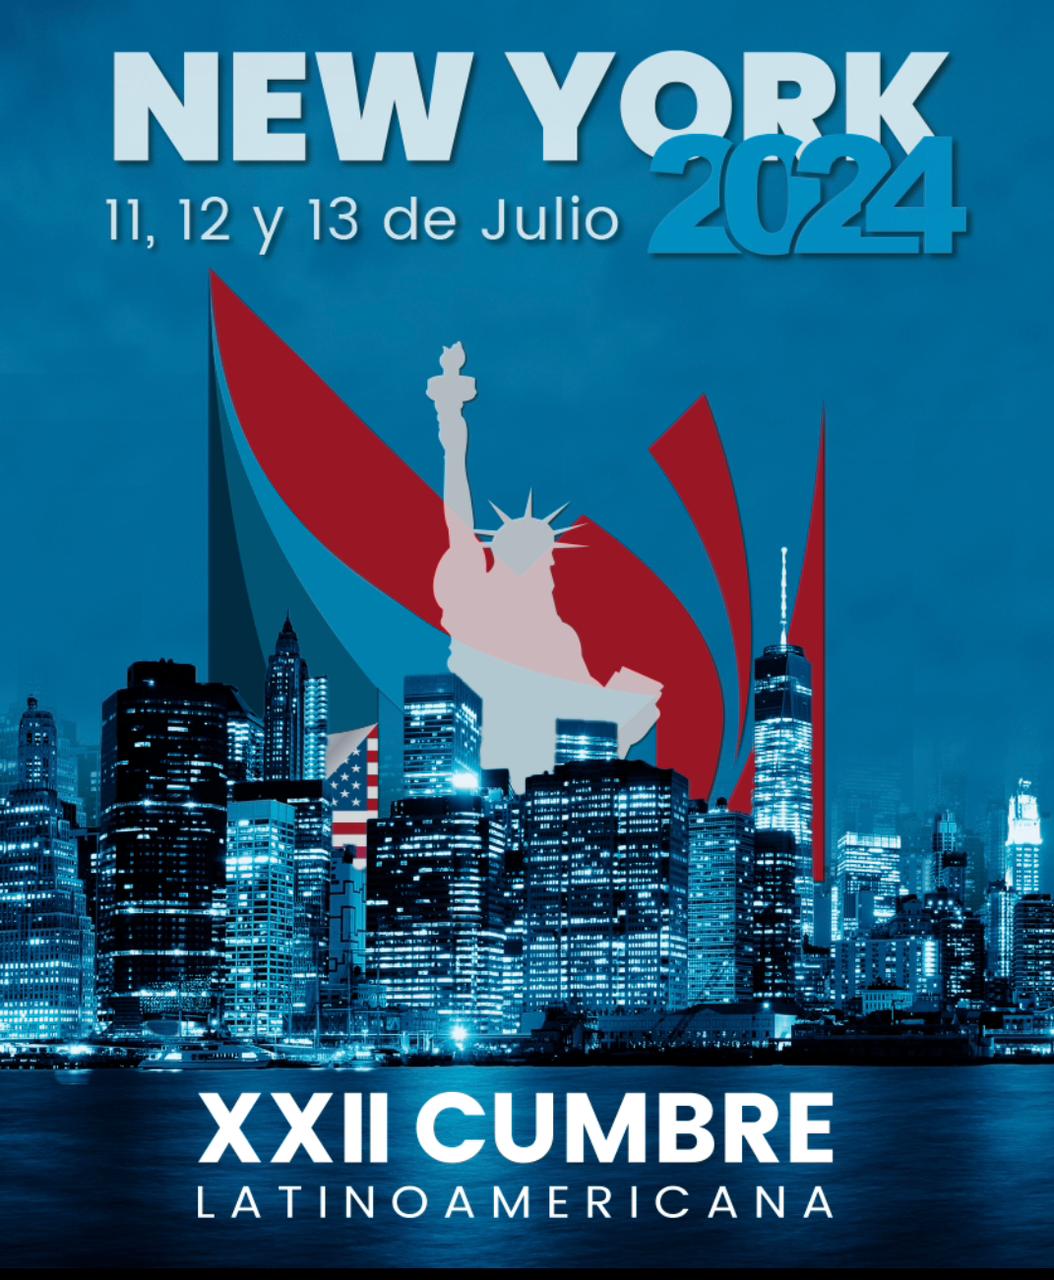 XXII Cumbre Latinoamericana